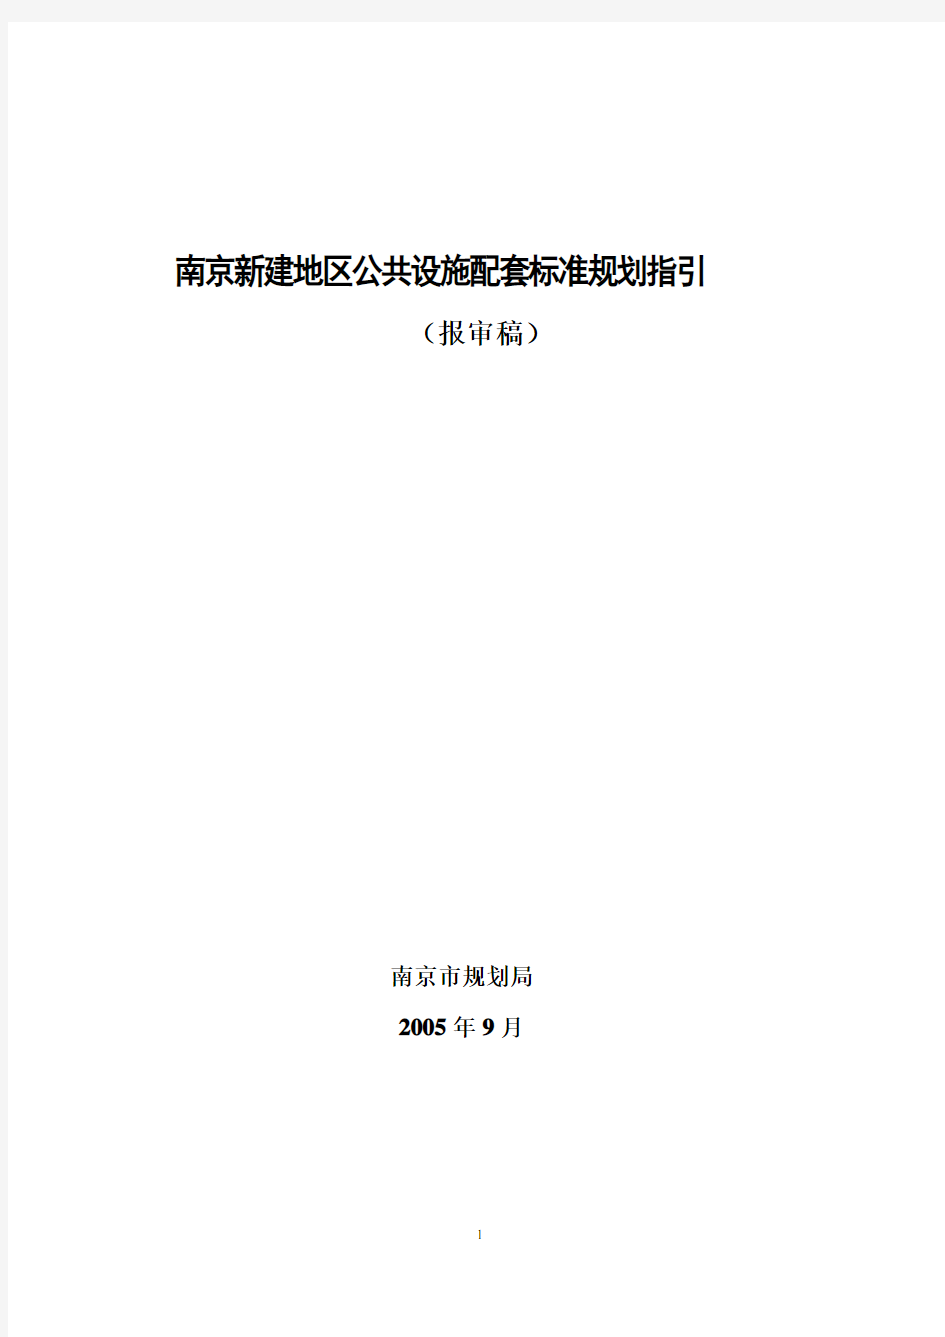 (完整版)《南京新建地区公共设施配套标准规划指引(报审稿)》